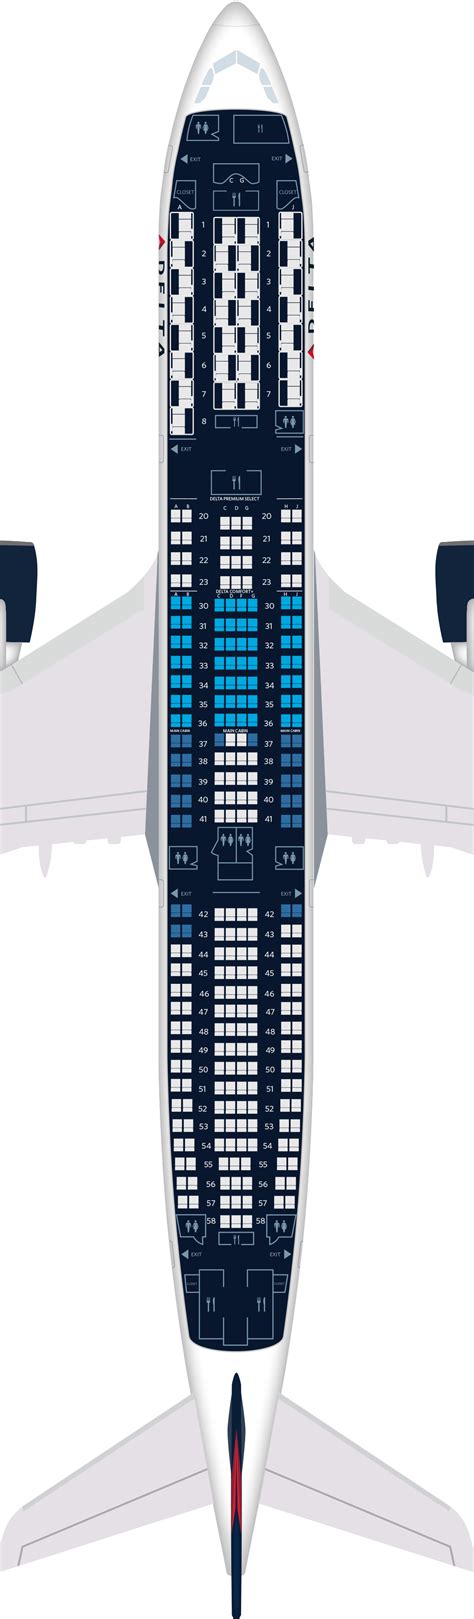 Delta Boeing 737 900 Seating Plan - Bios Pics